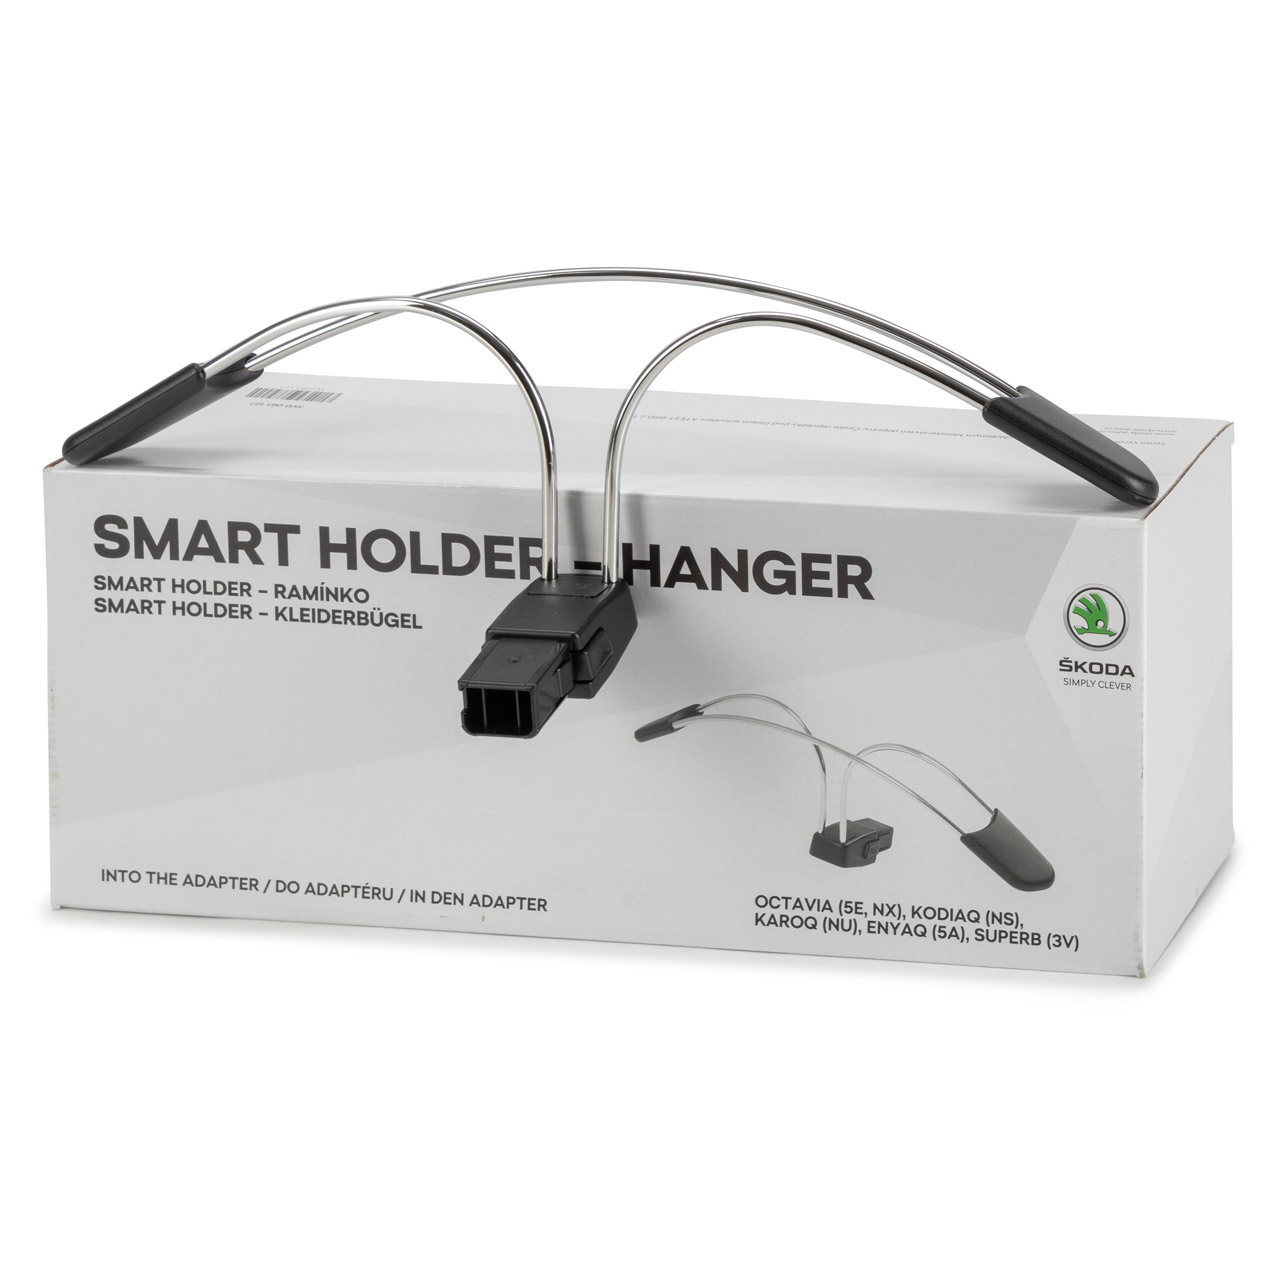 ORIGINAL Skoda Smart Holder-Hanger Kleiderbügel für die Kopfstütze 3V0061127